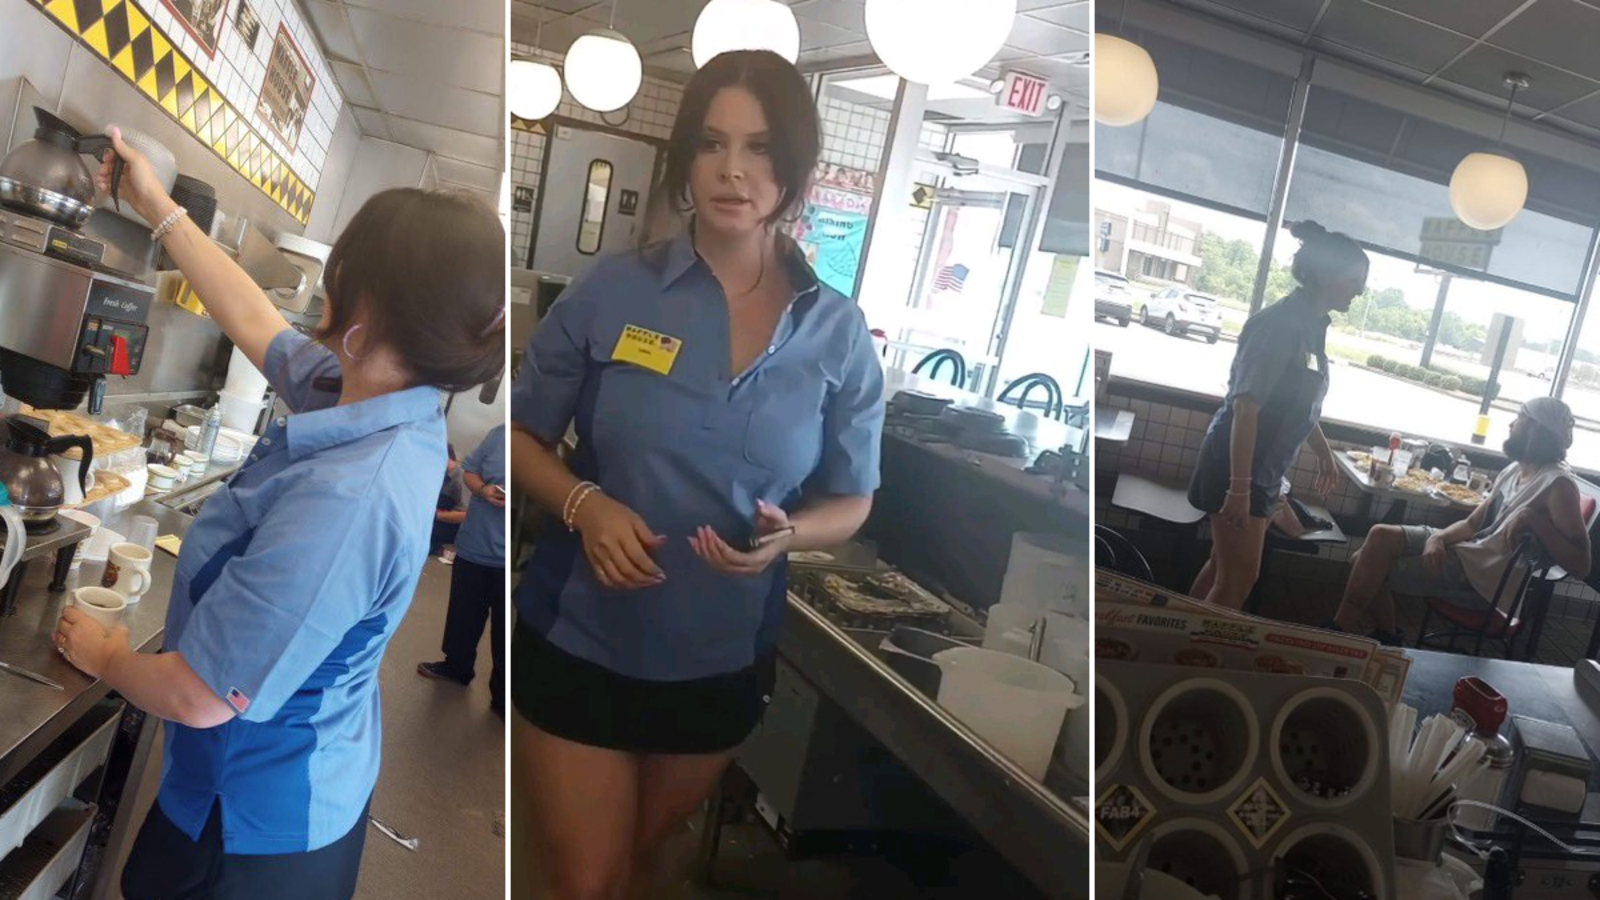 😁 Лана Дель Рей зустріла шанувальницю, що косплеїть її під час роботи у Waffle House